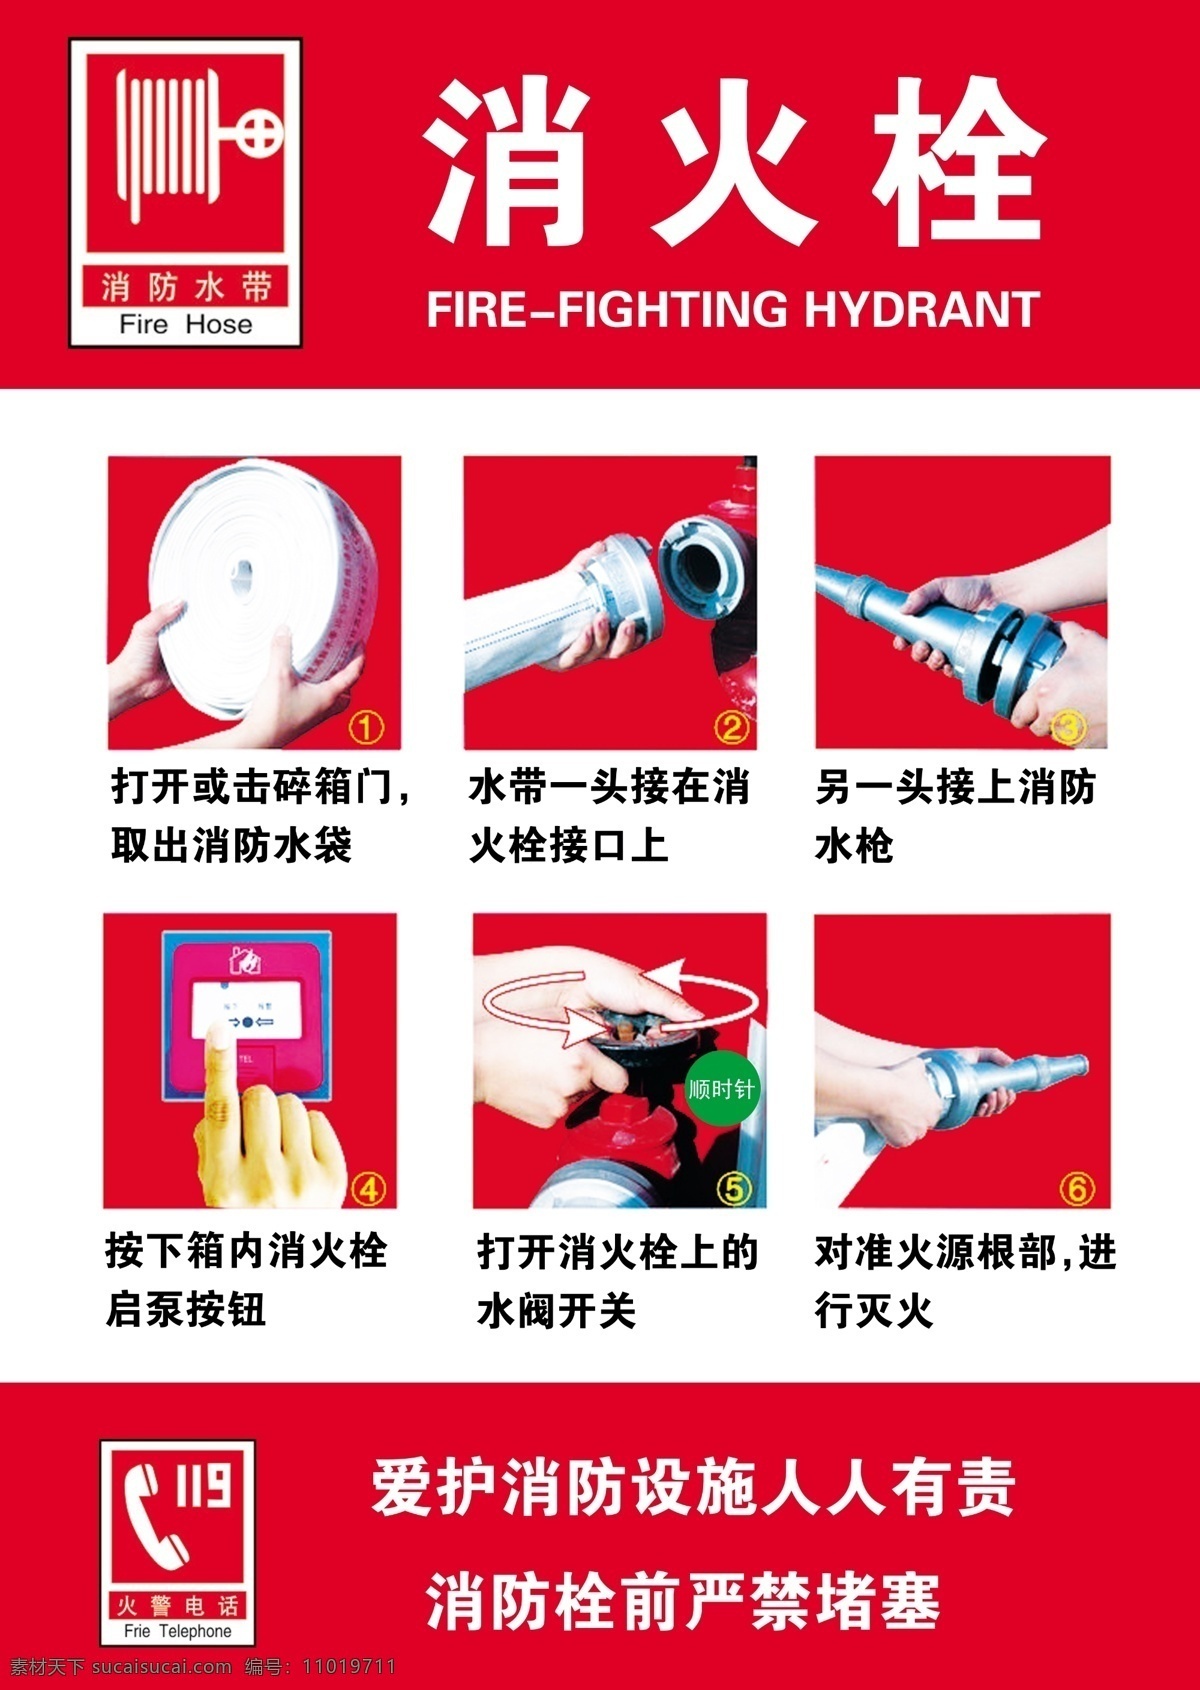 消火栓 消防栓 操作 使用 示意 使用示意 分层